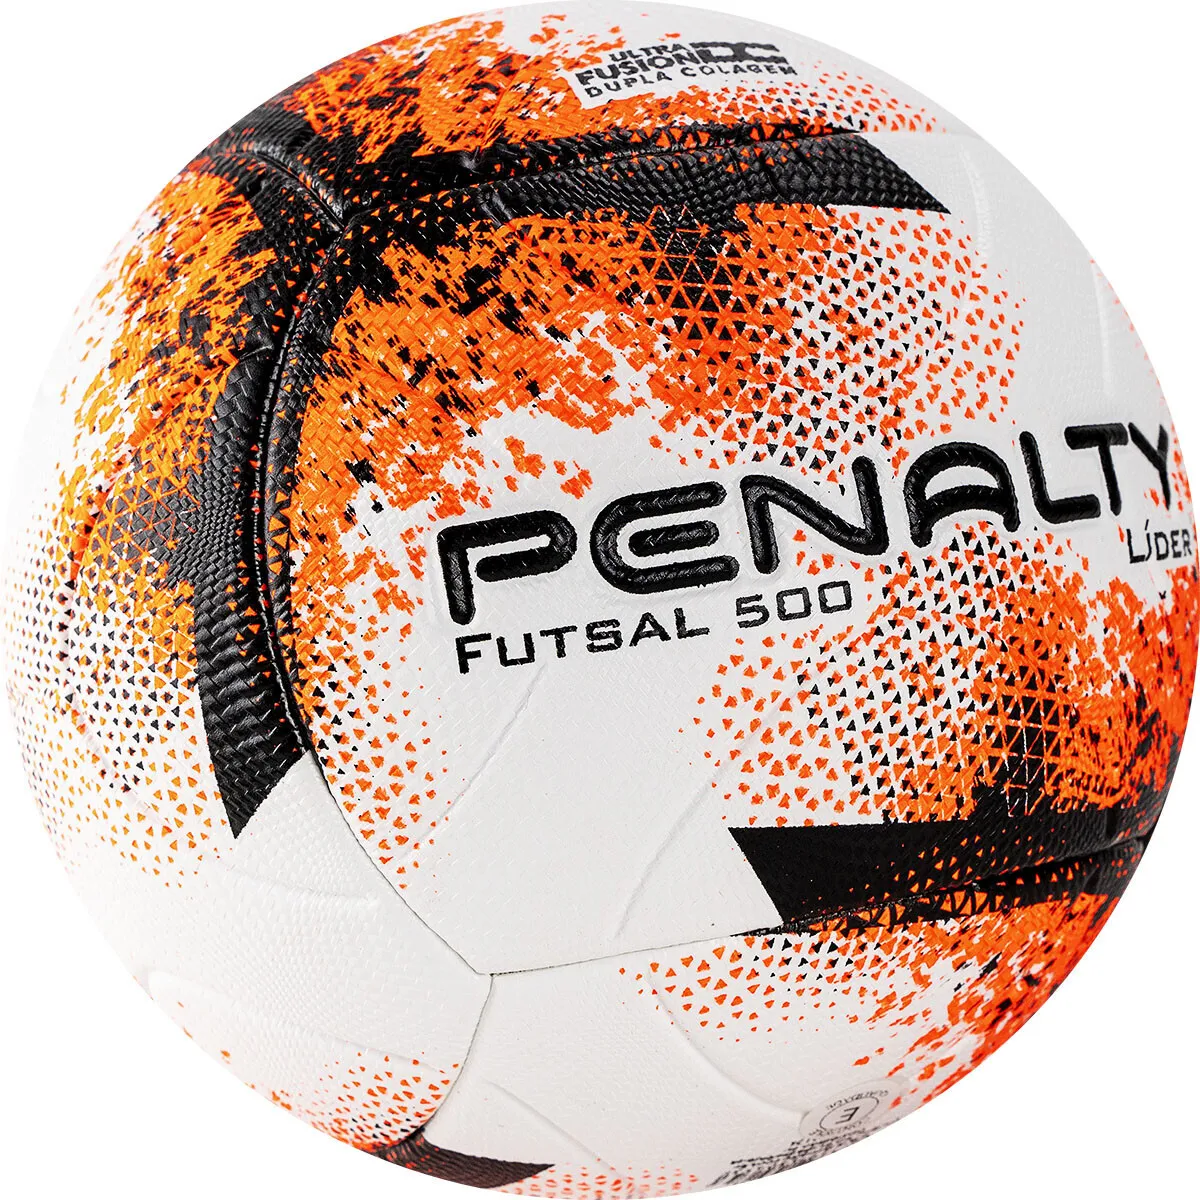 Фото Мяч футзальный Penalty Futsal 500 Lider XXI №4 бело-оранжево-черный 5213061710-U со склада магазина СпортЕВ